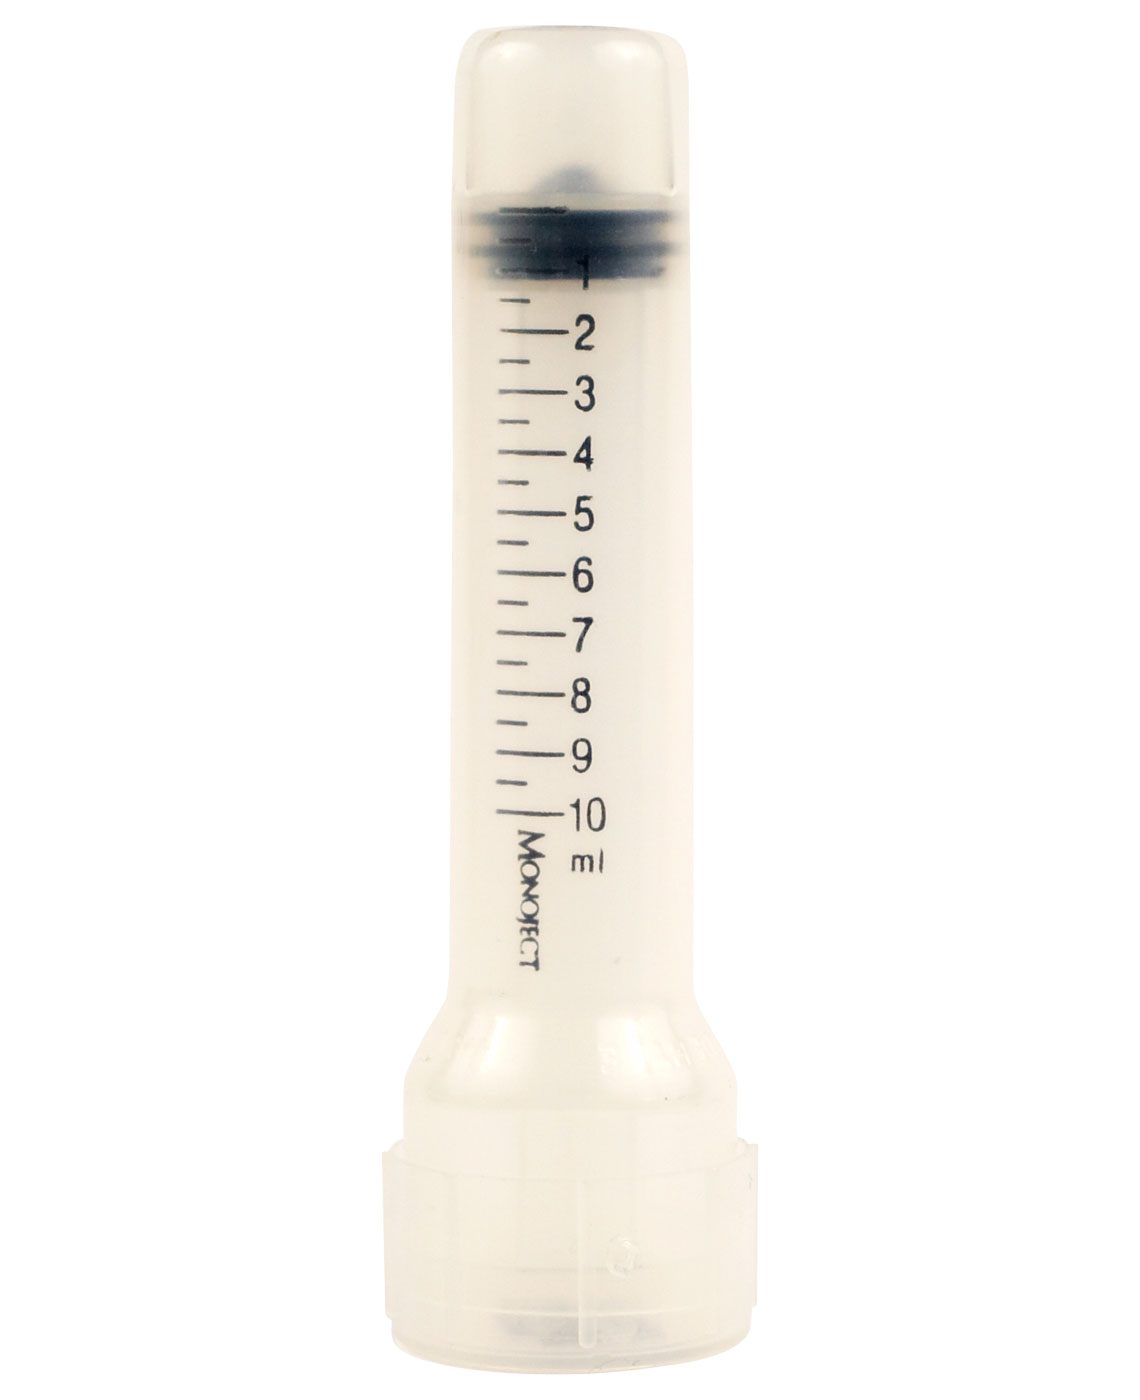 Hypodermic Syringe 10ml | First Aid Fast